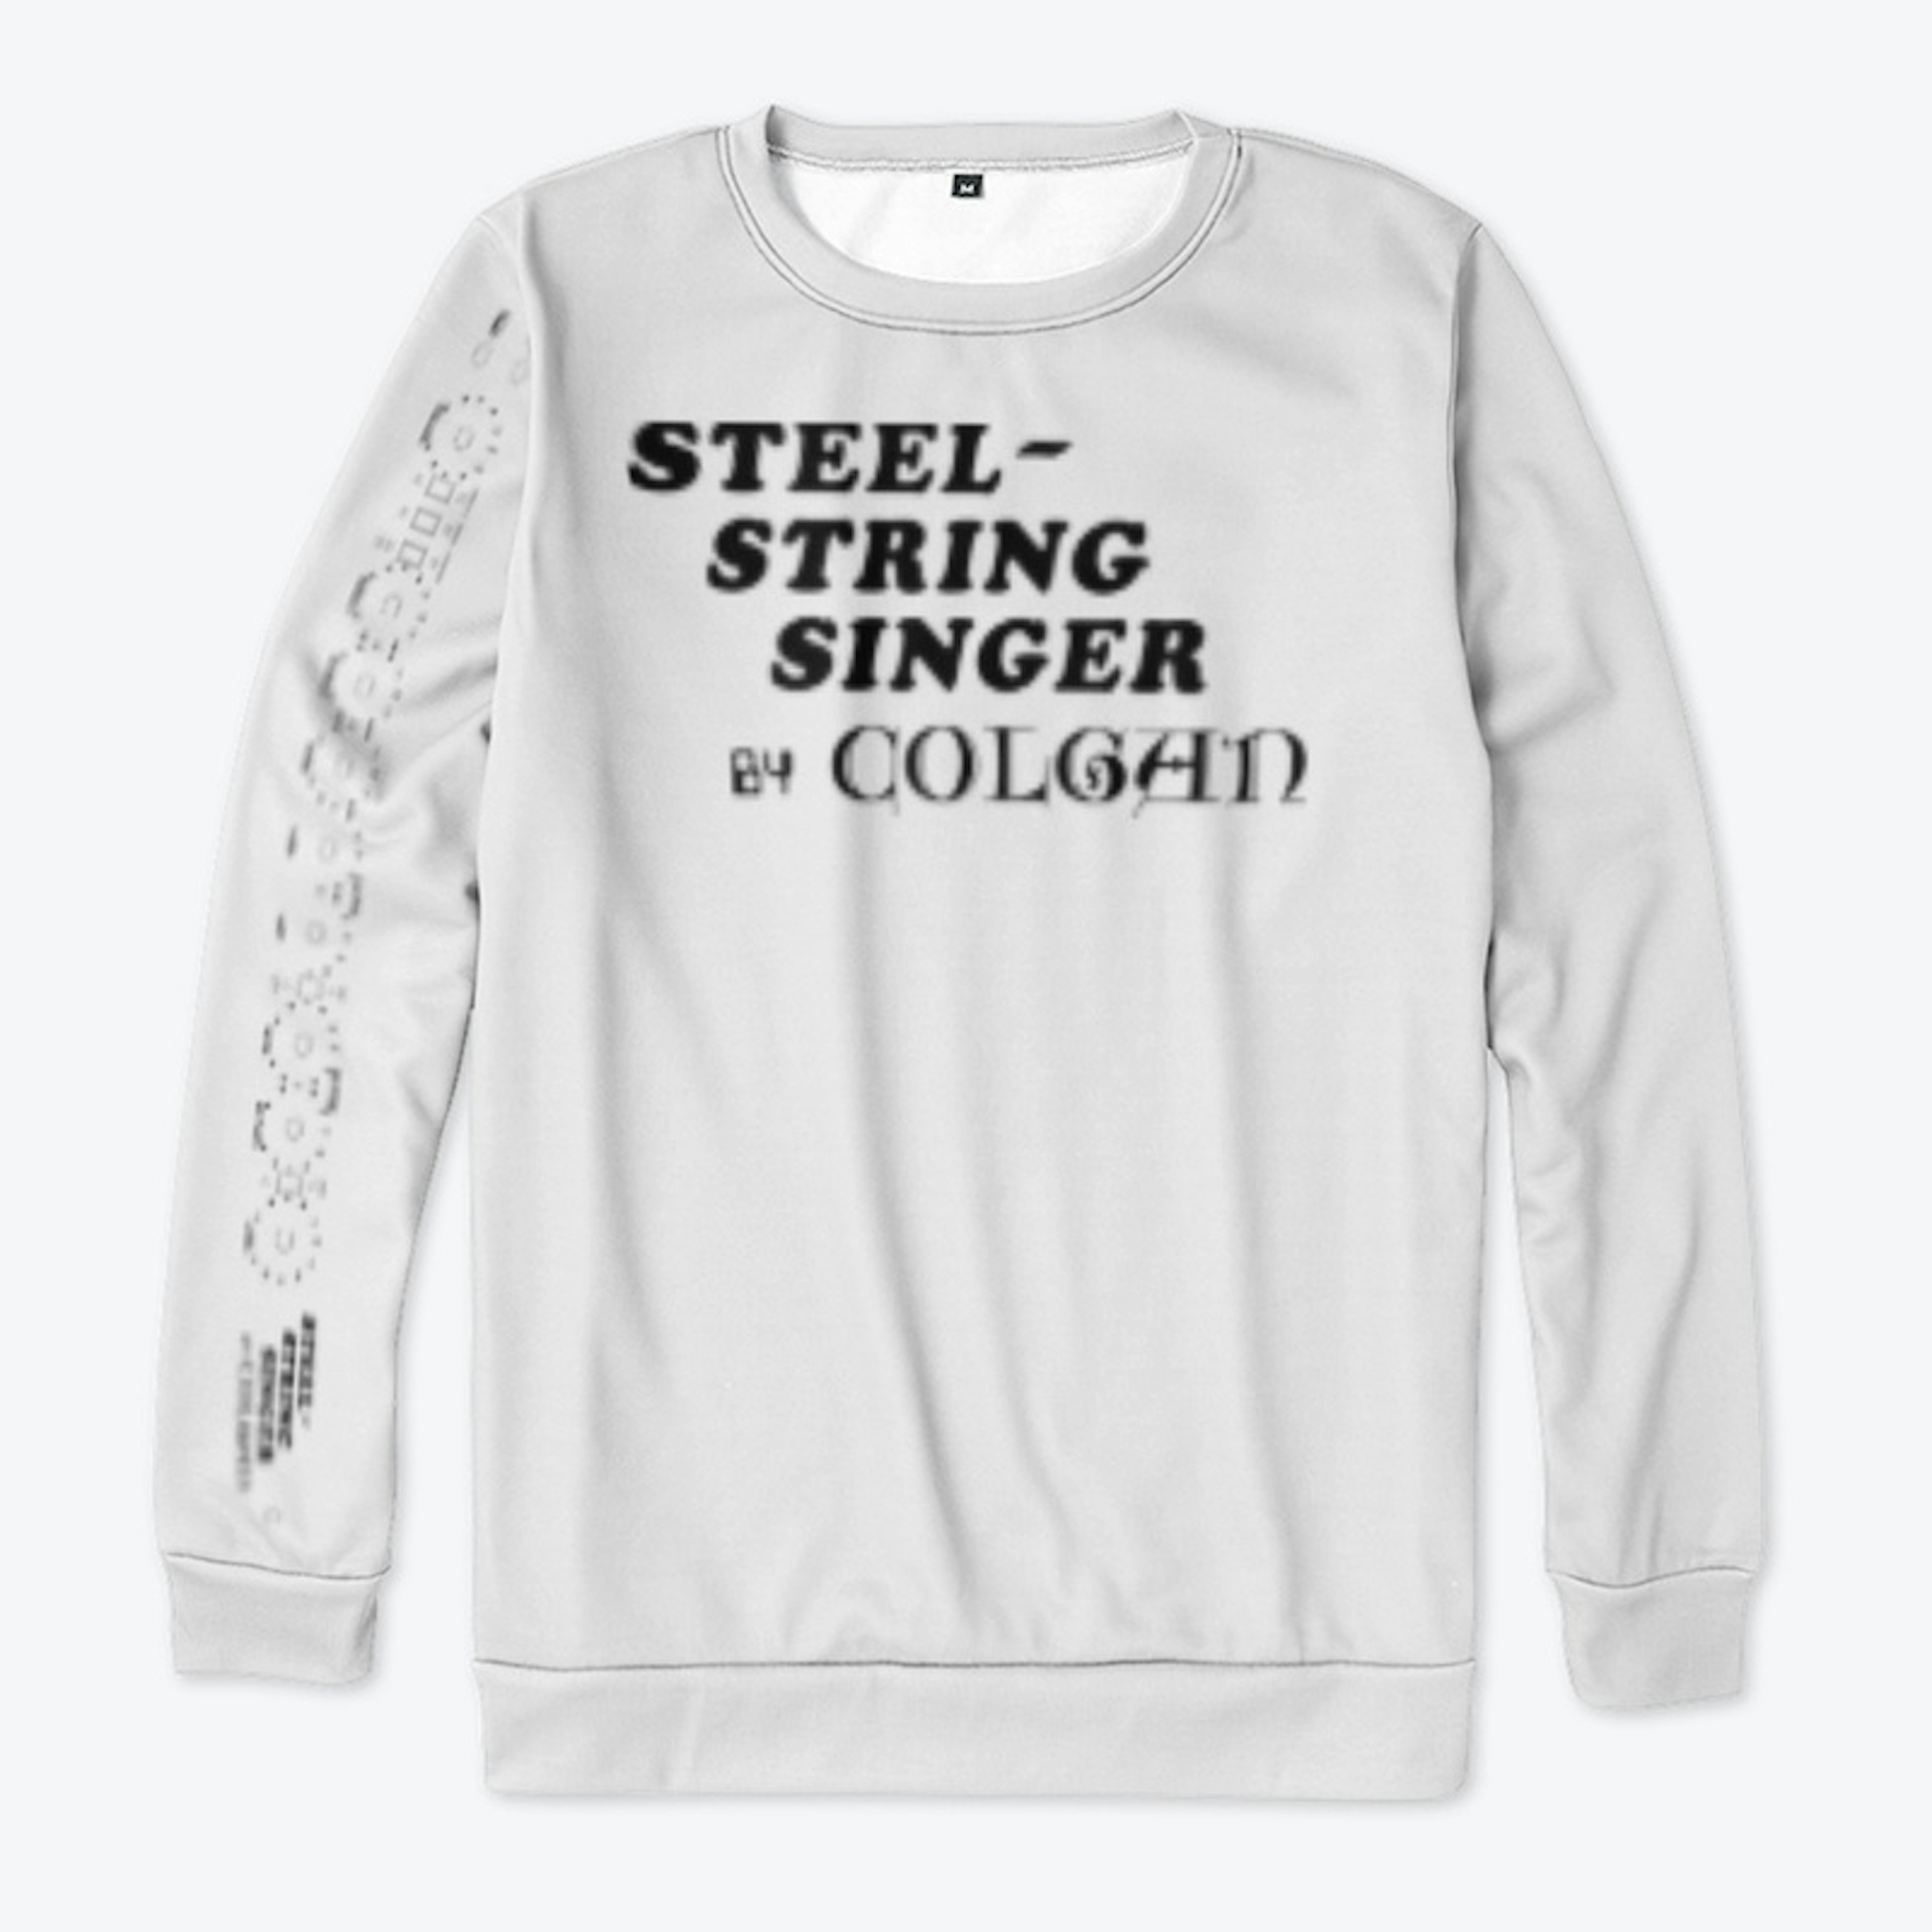 Steel String Singer #002 By Colgan